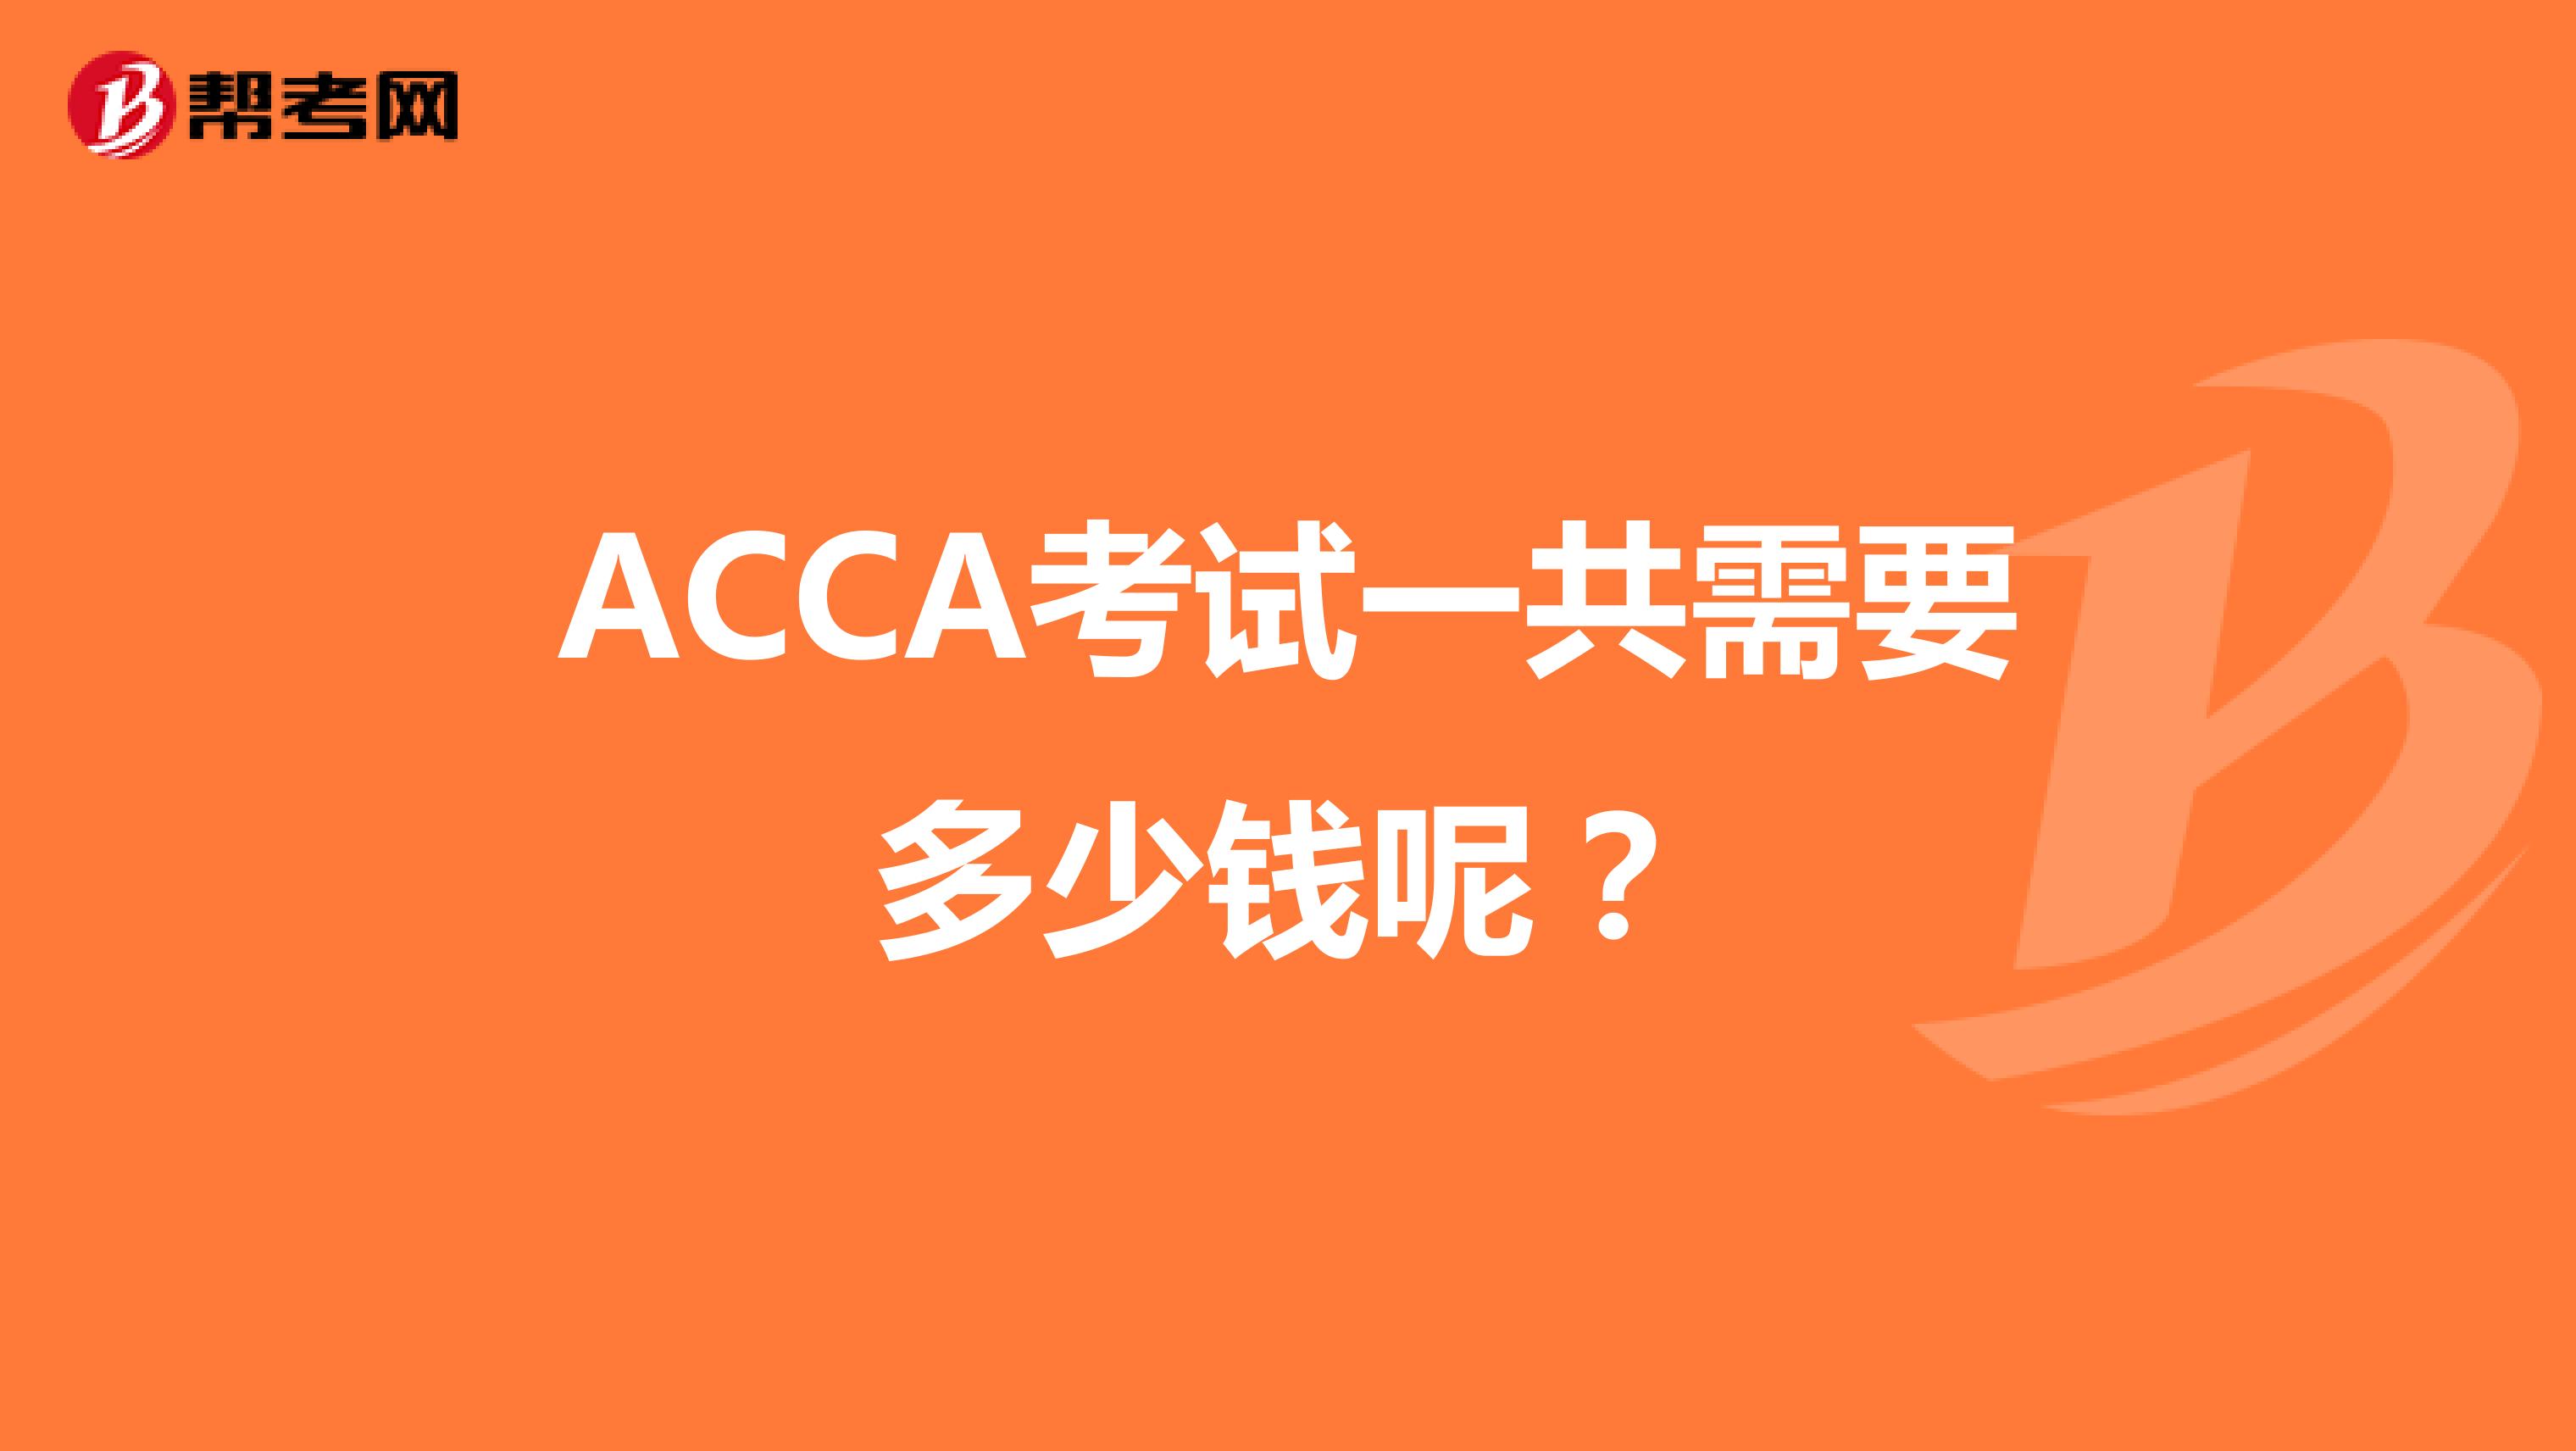 ACCA考试一共需要多少钱呢？